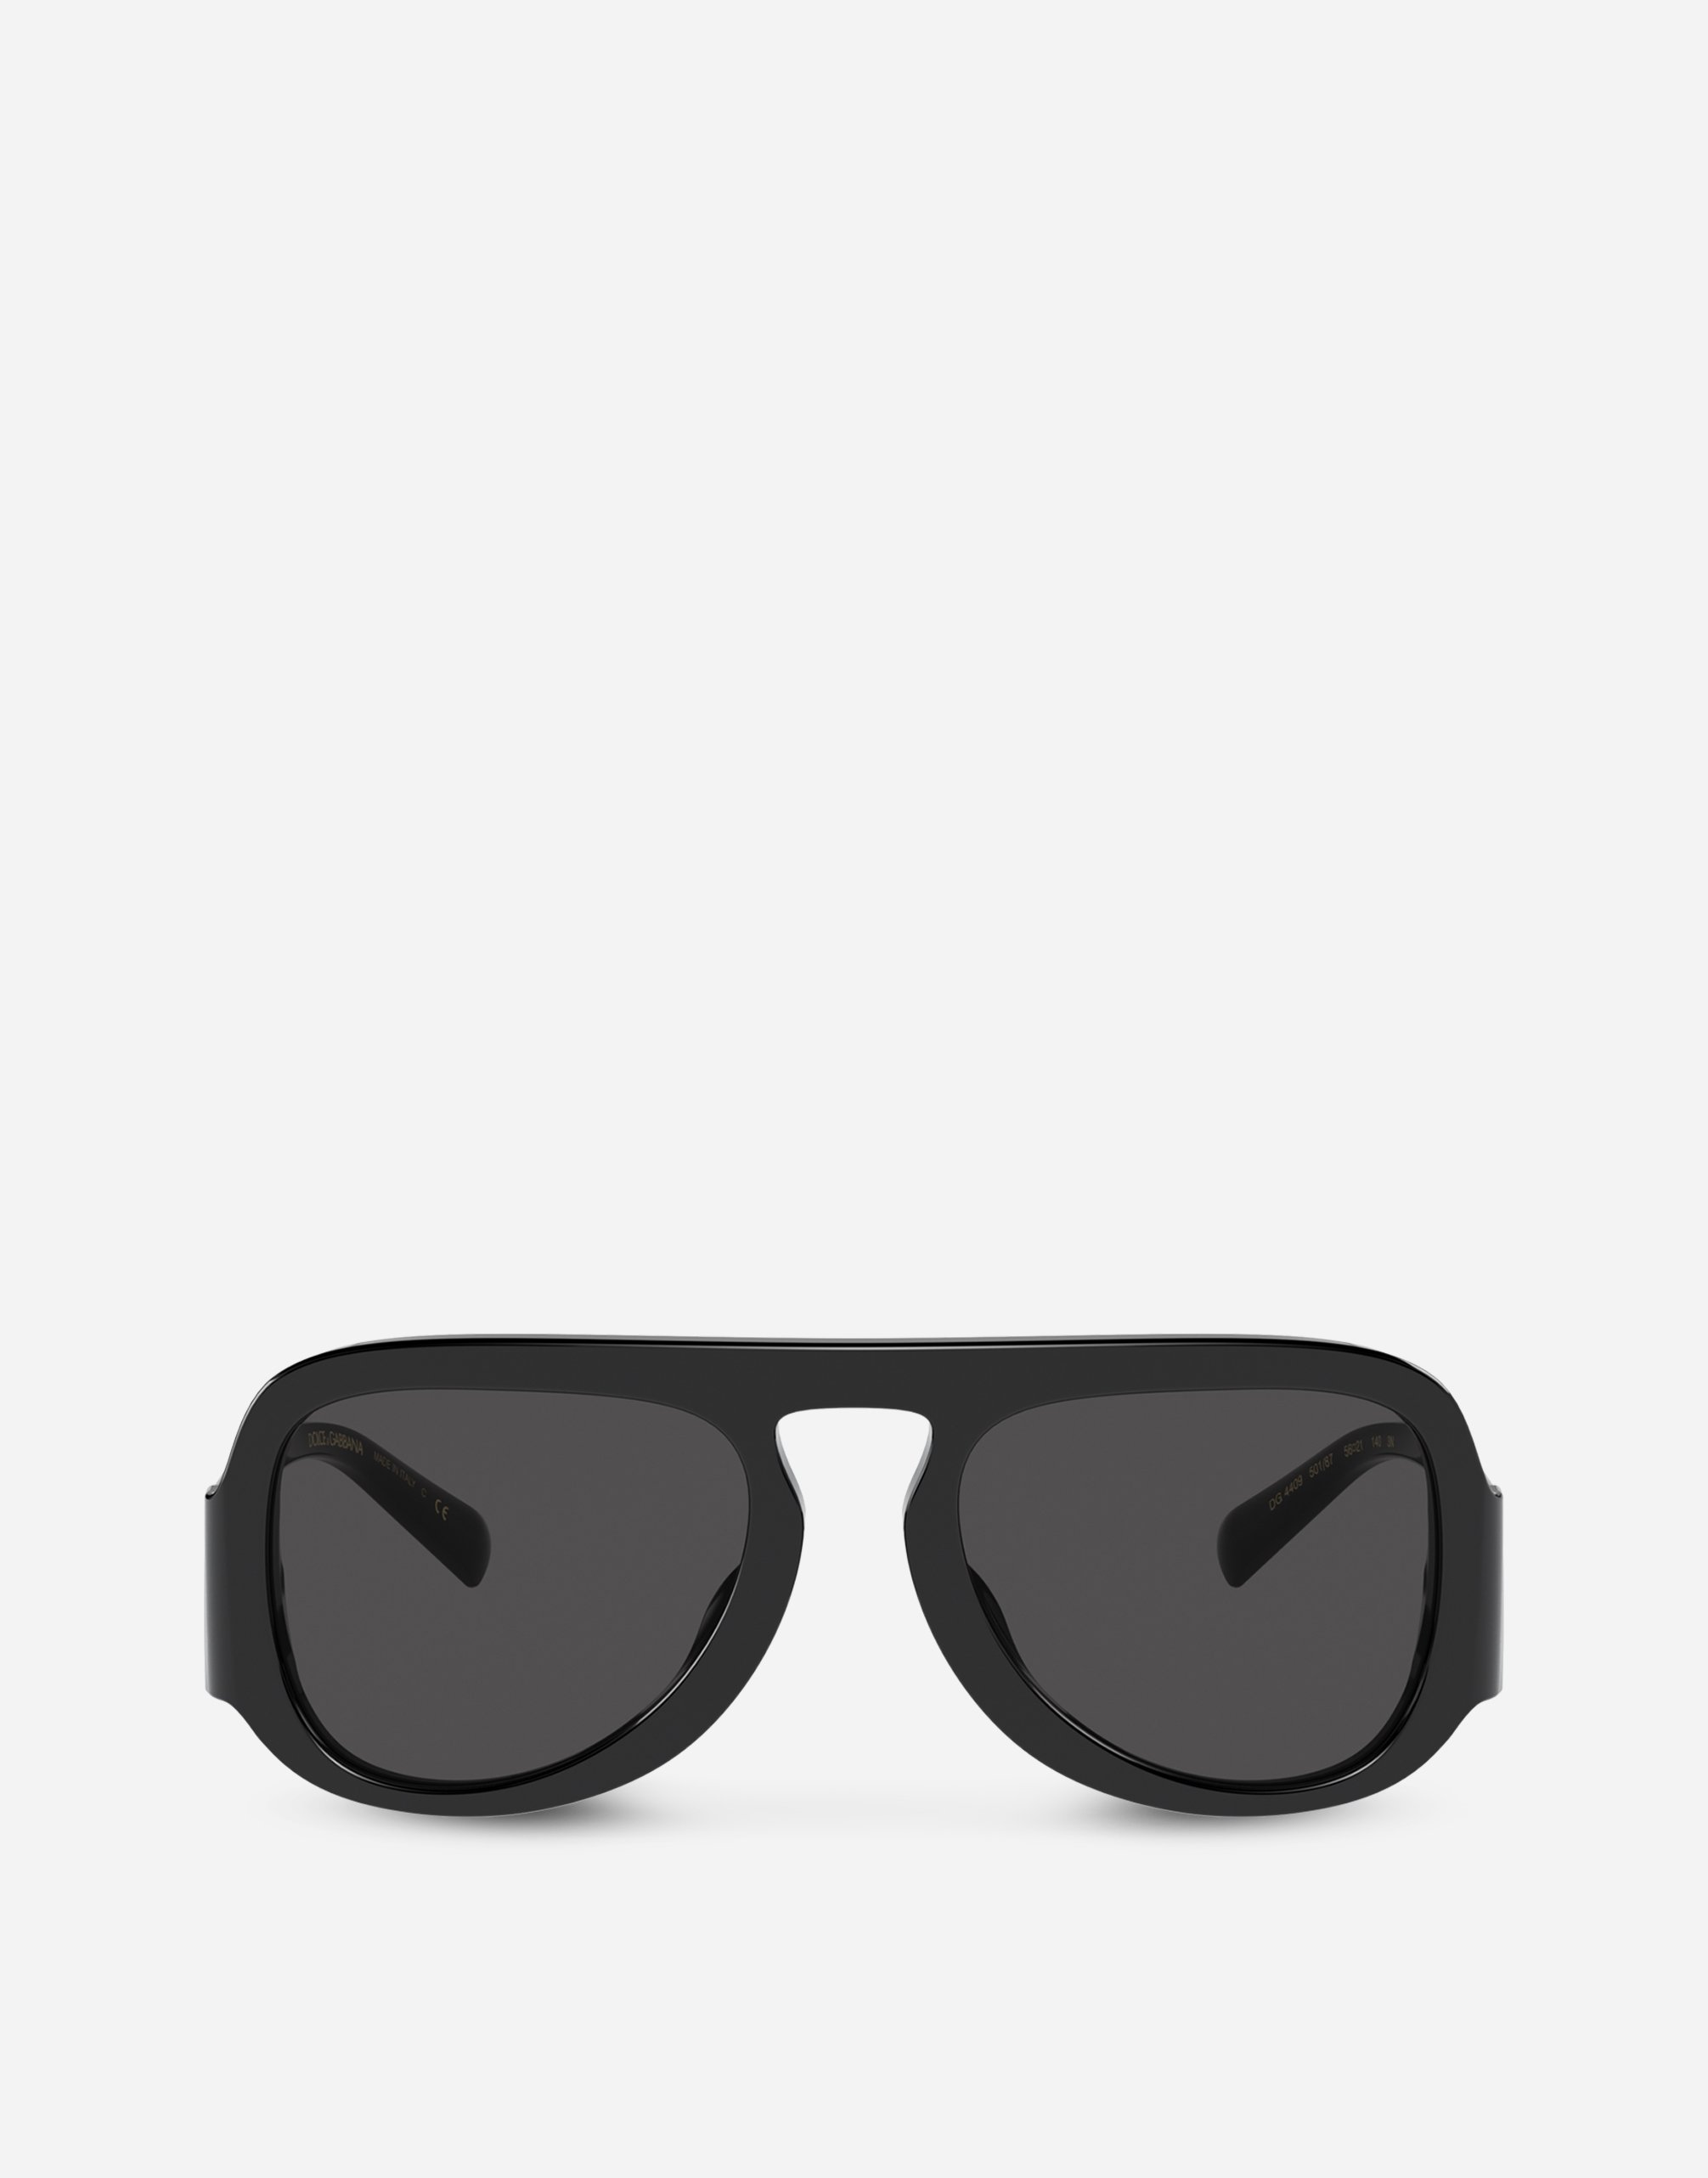 DG Crossed sunglasses  in Black